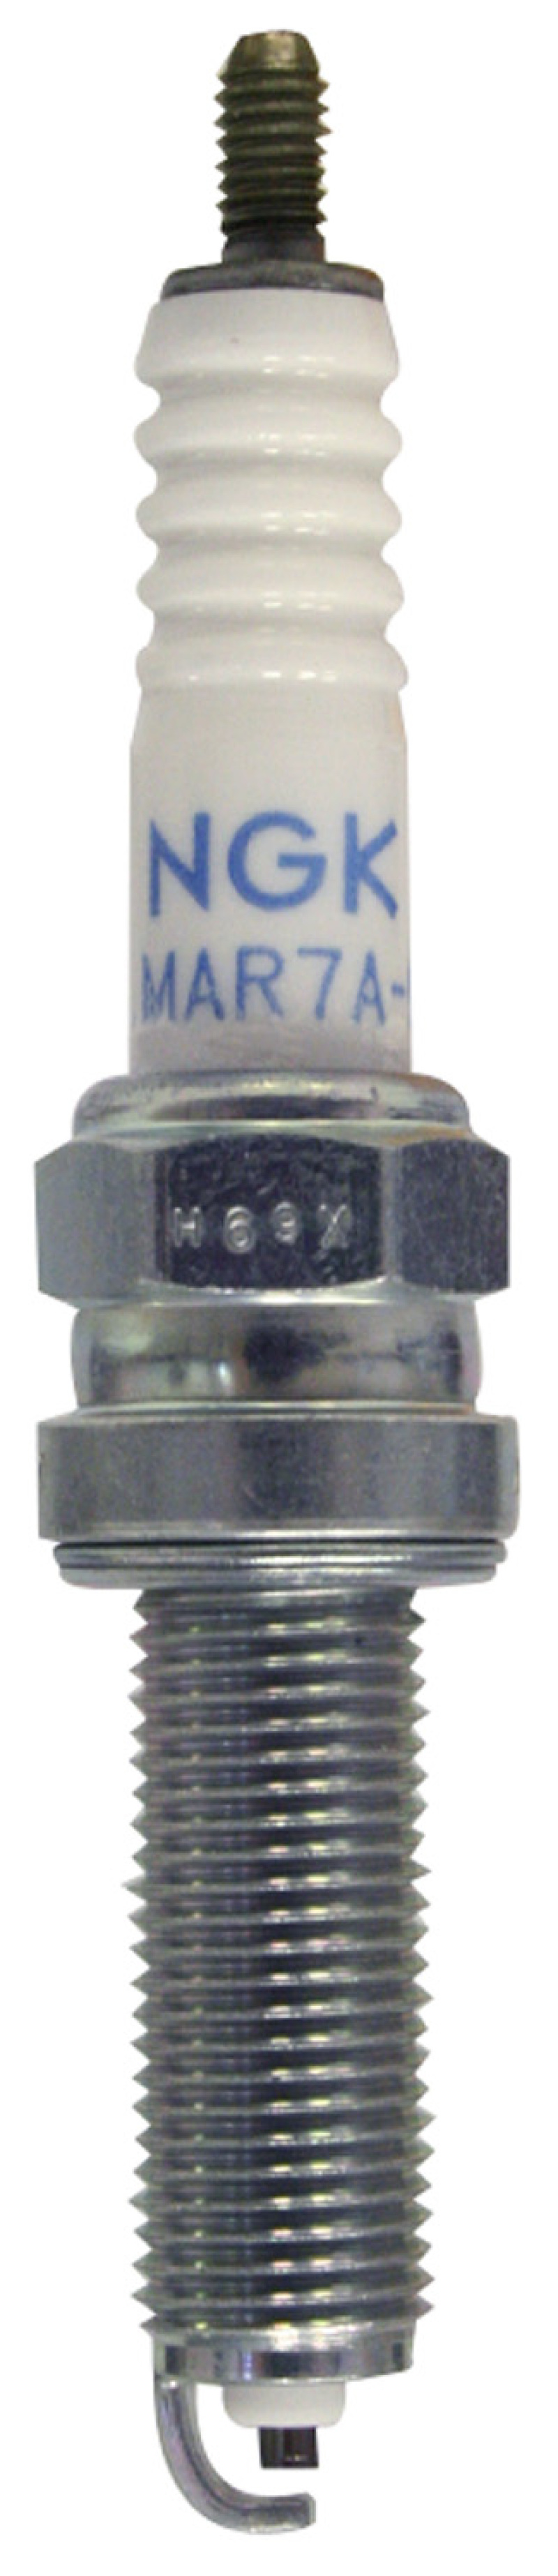 NGK Standard Spark Plug Box of 10 (LMAR8A-9) - 4313